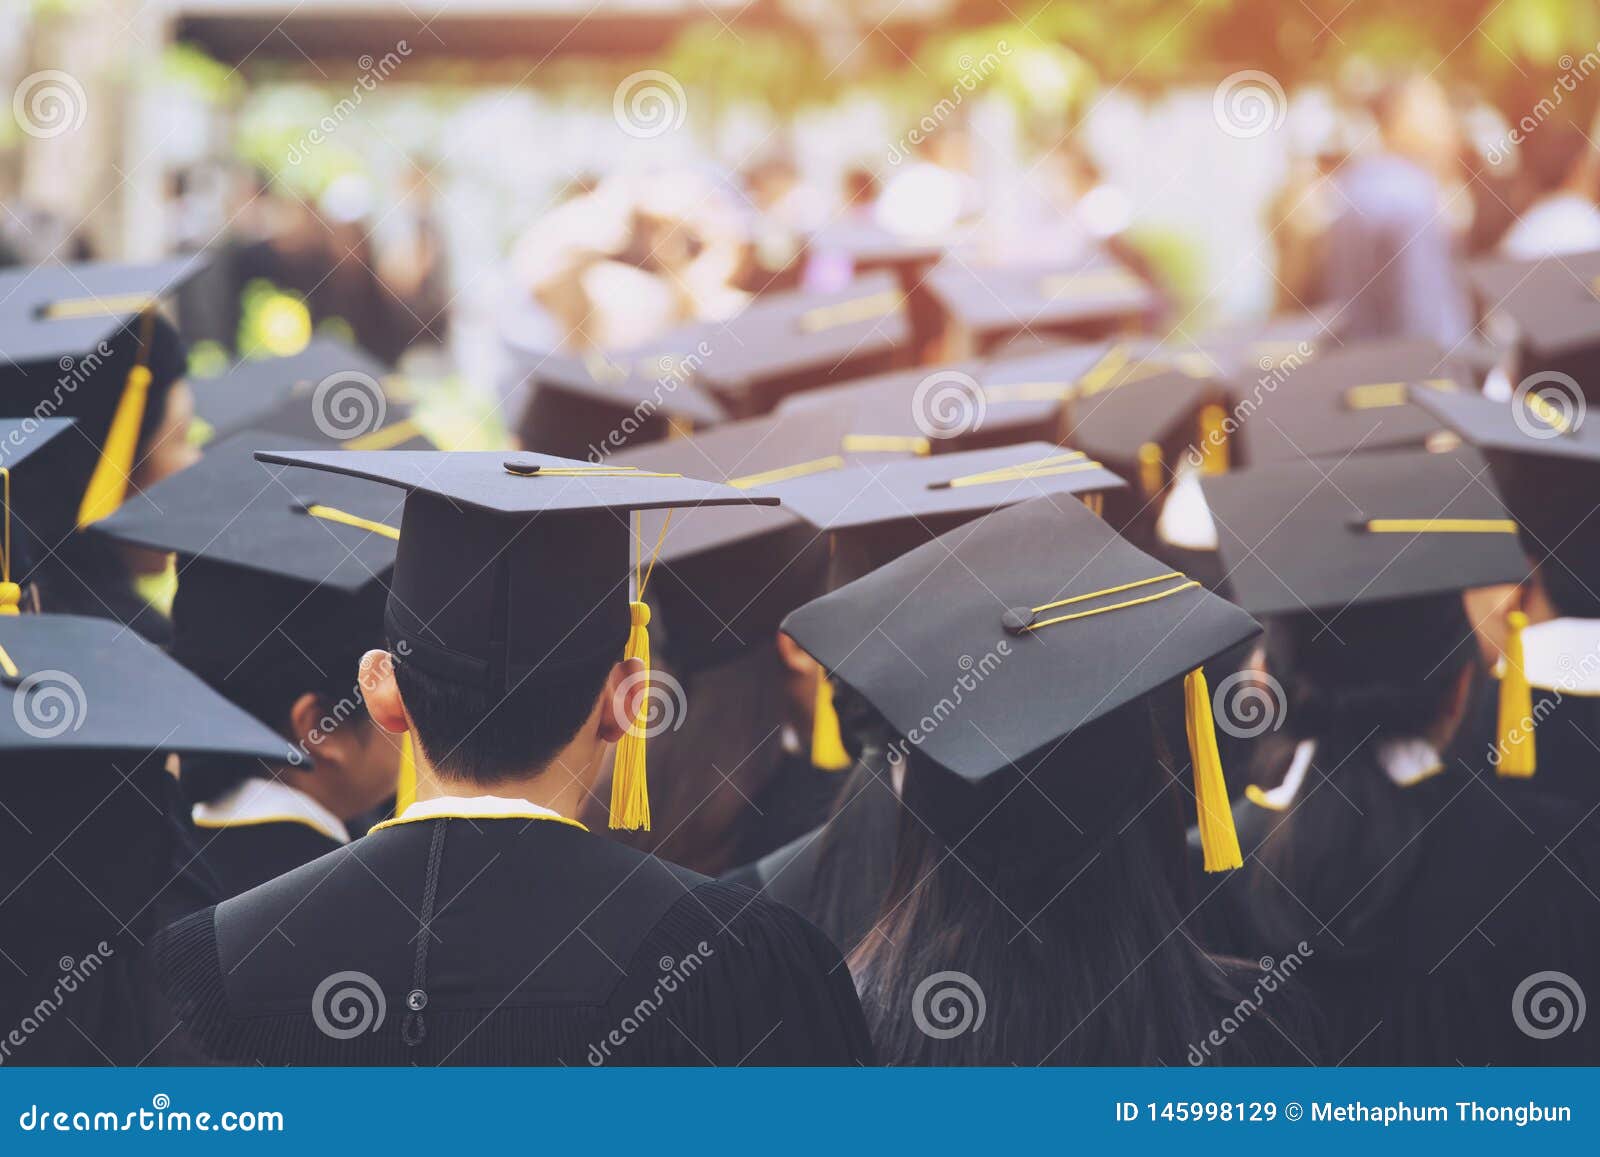 shot of graduation hats during commencement success graduates of the university, concept education congratulation. graduation cere